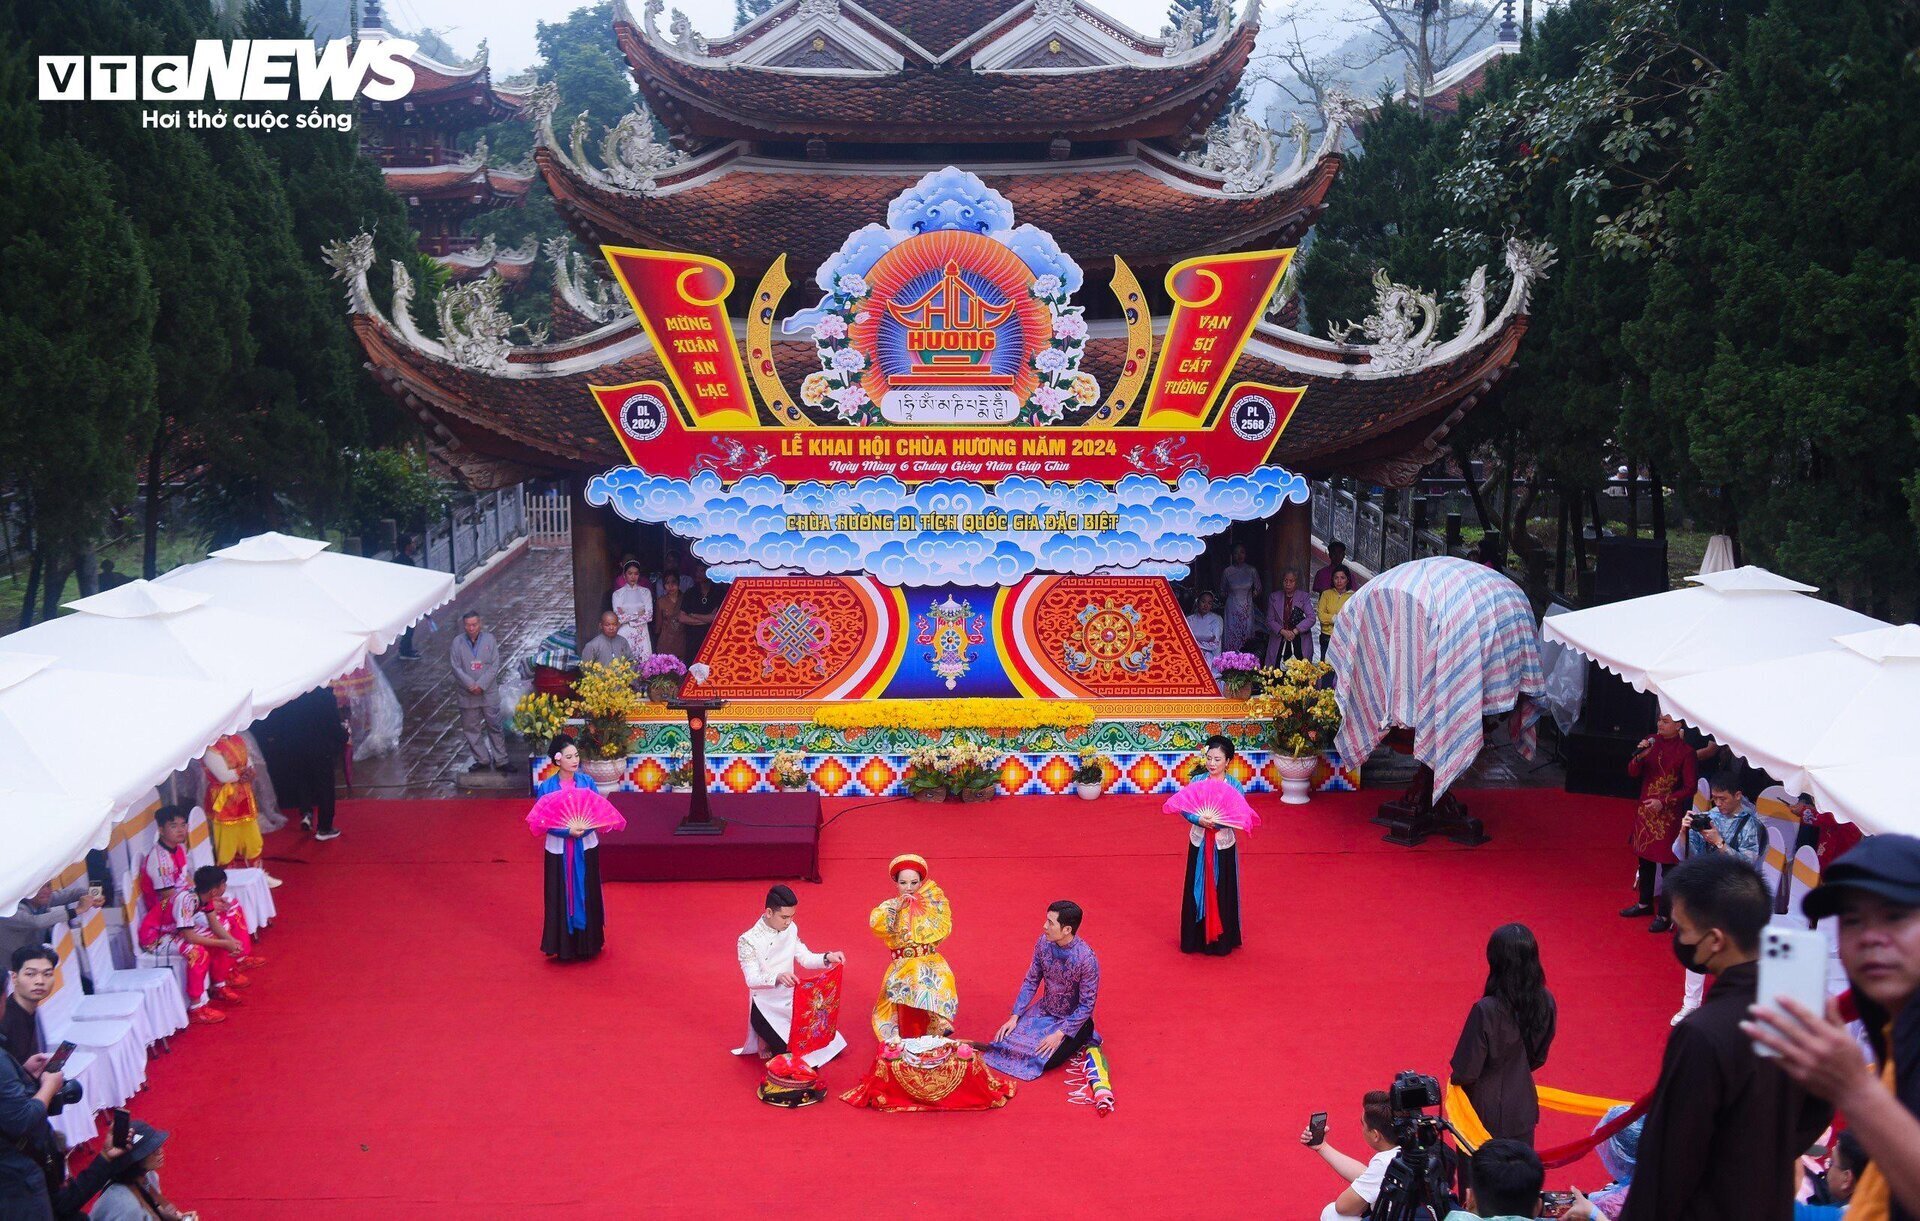 Chùa Hương nổi tiếng là một trong những danh lam thắng cảnh quốc gia hấp dẫn được nhiều du khách trong, và ngoài nước tại khu vực miền Bắc.